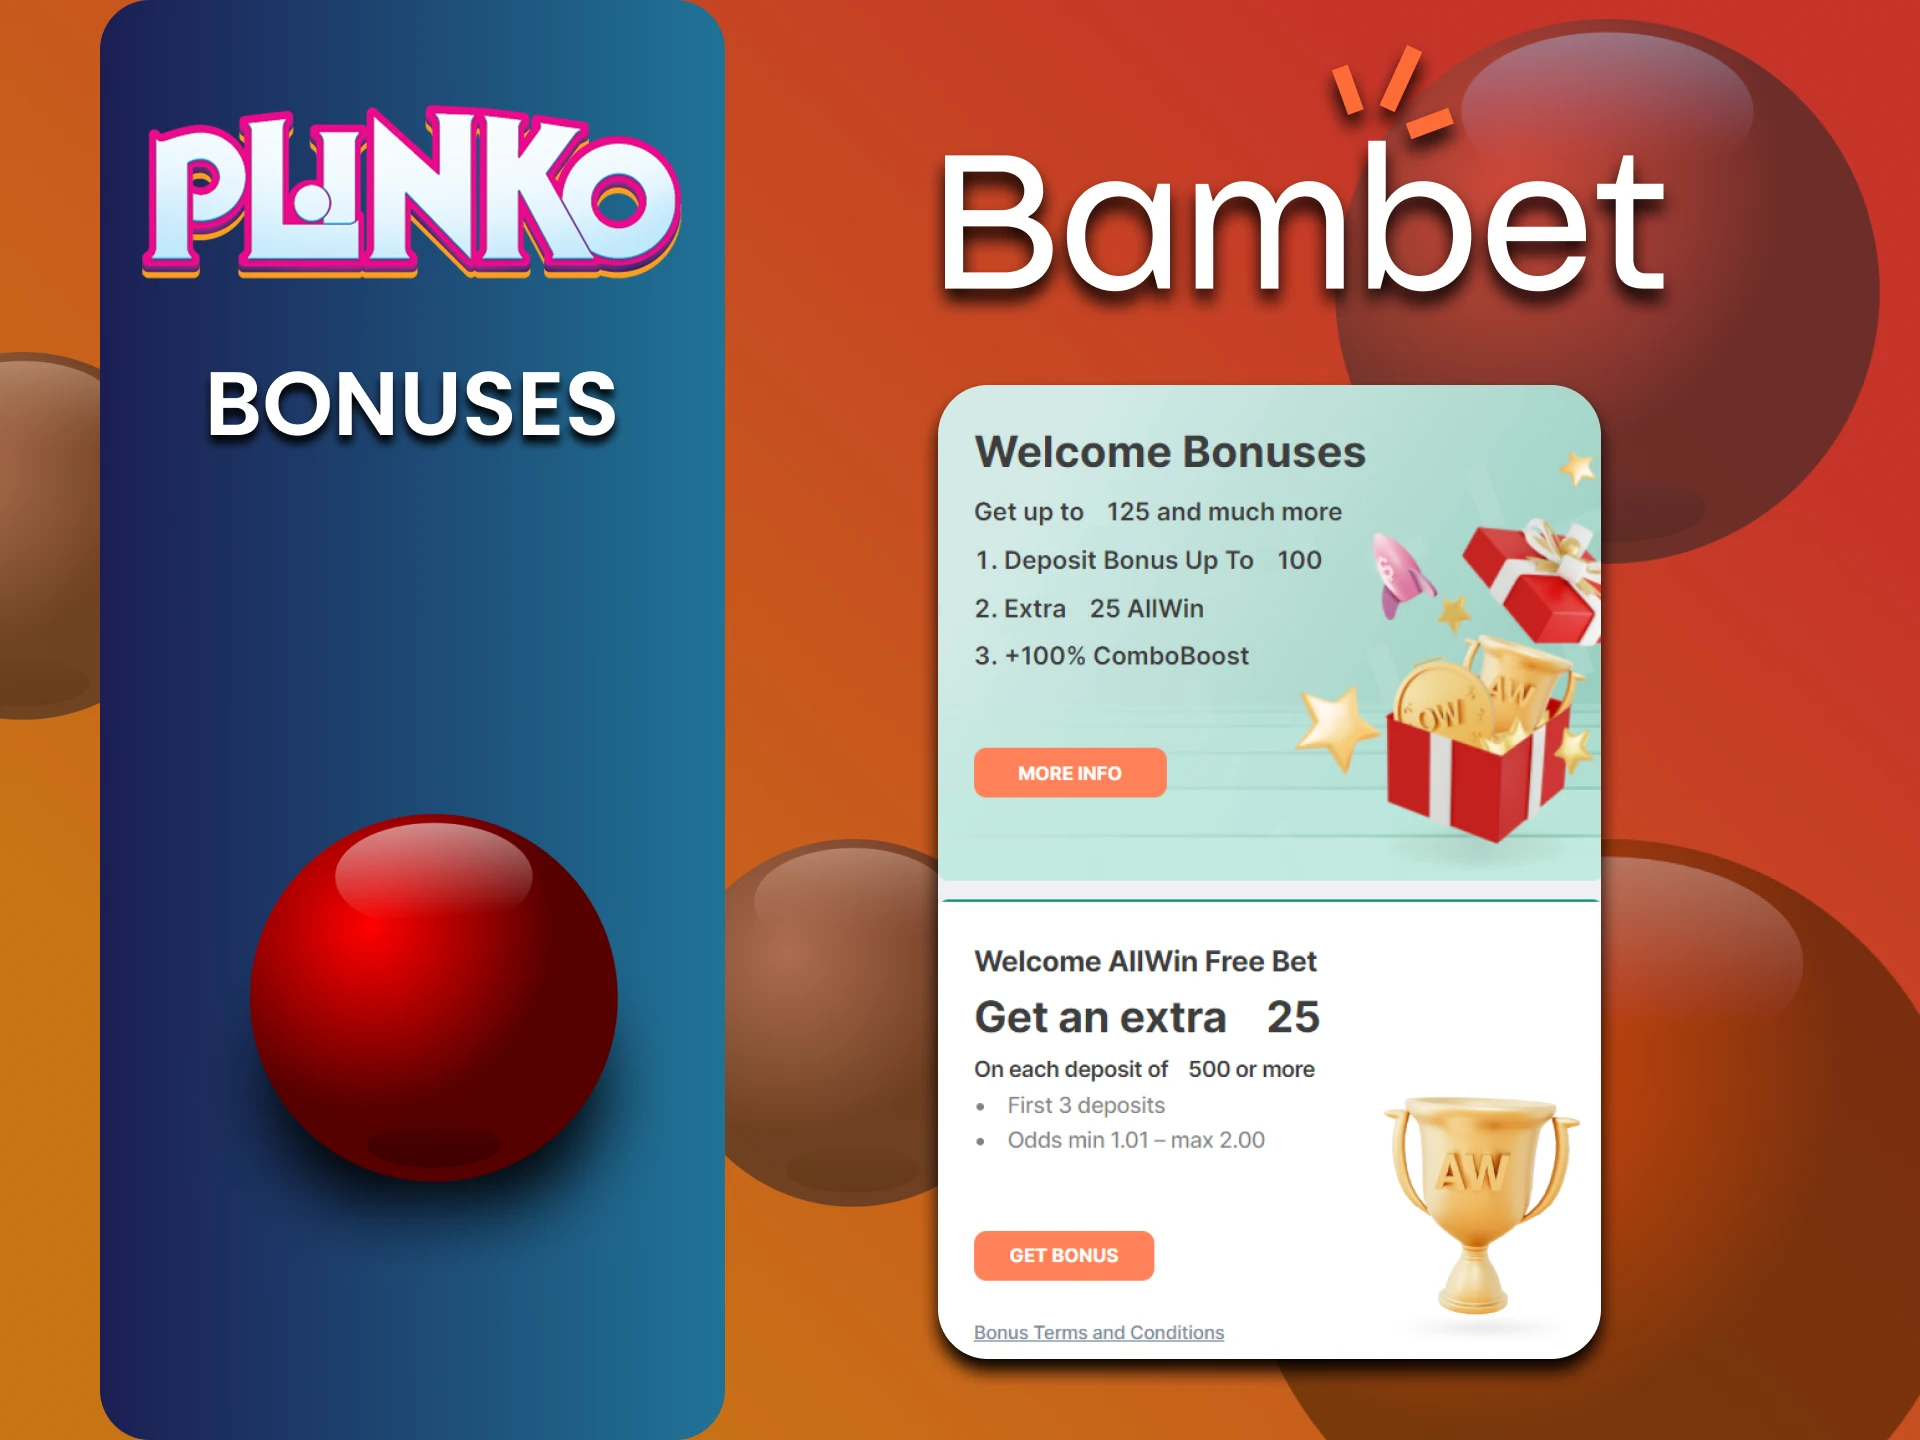 Bambet gives bonuses to Plinko users.